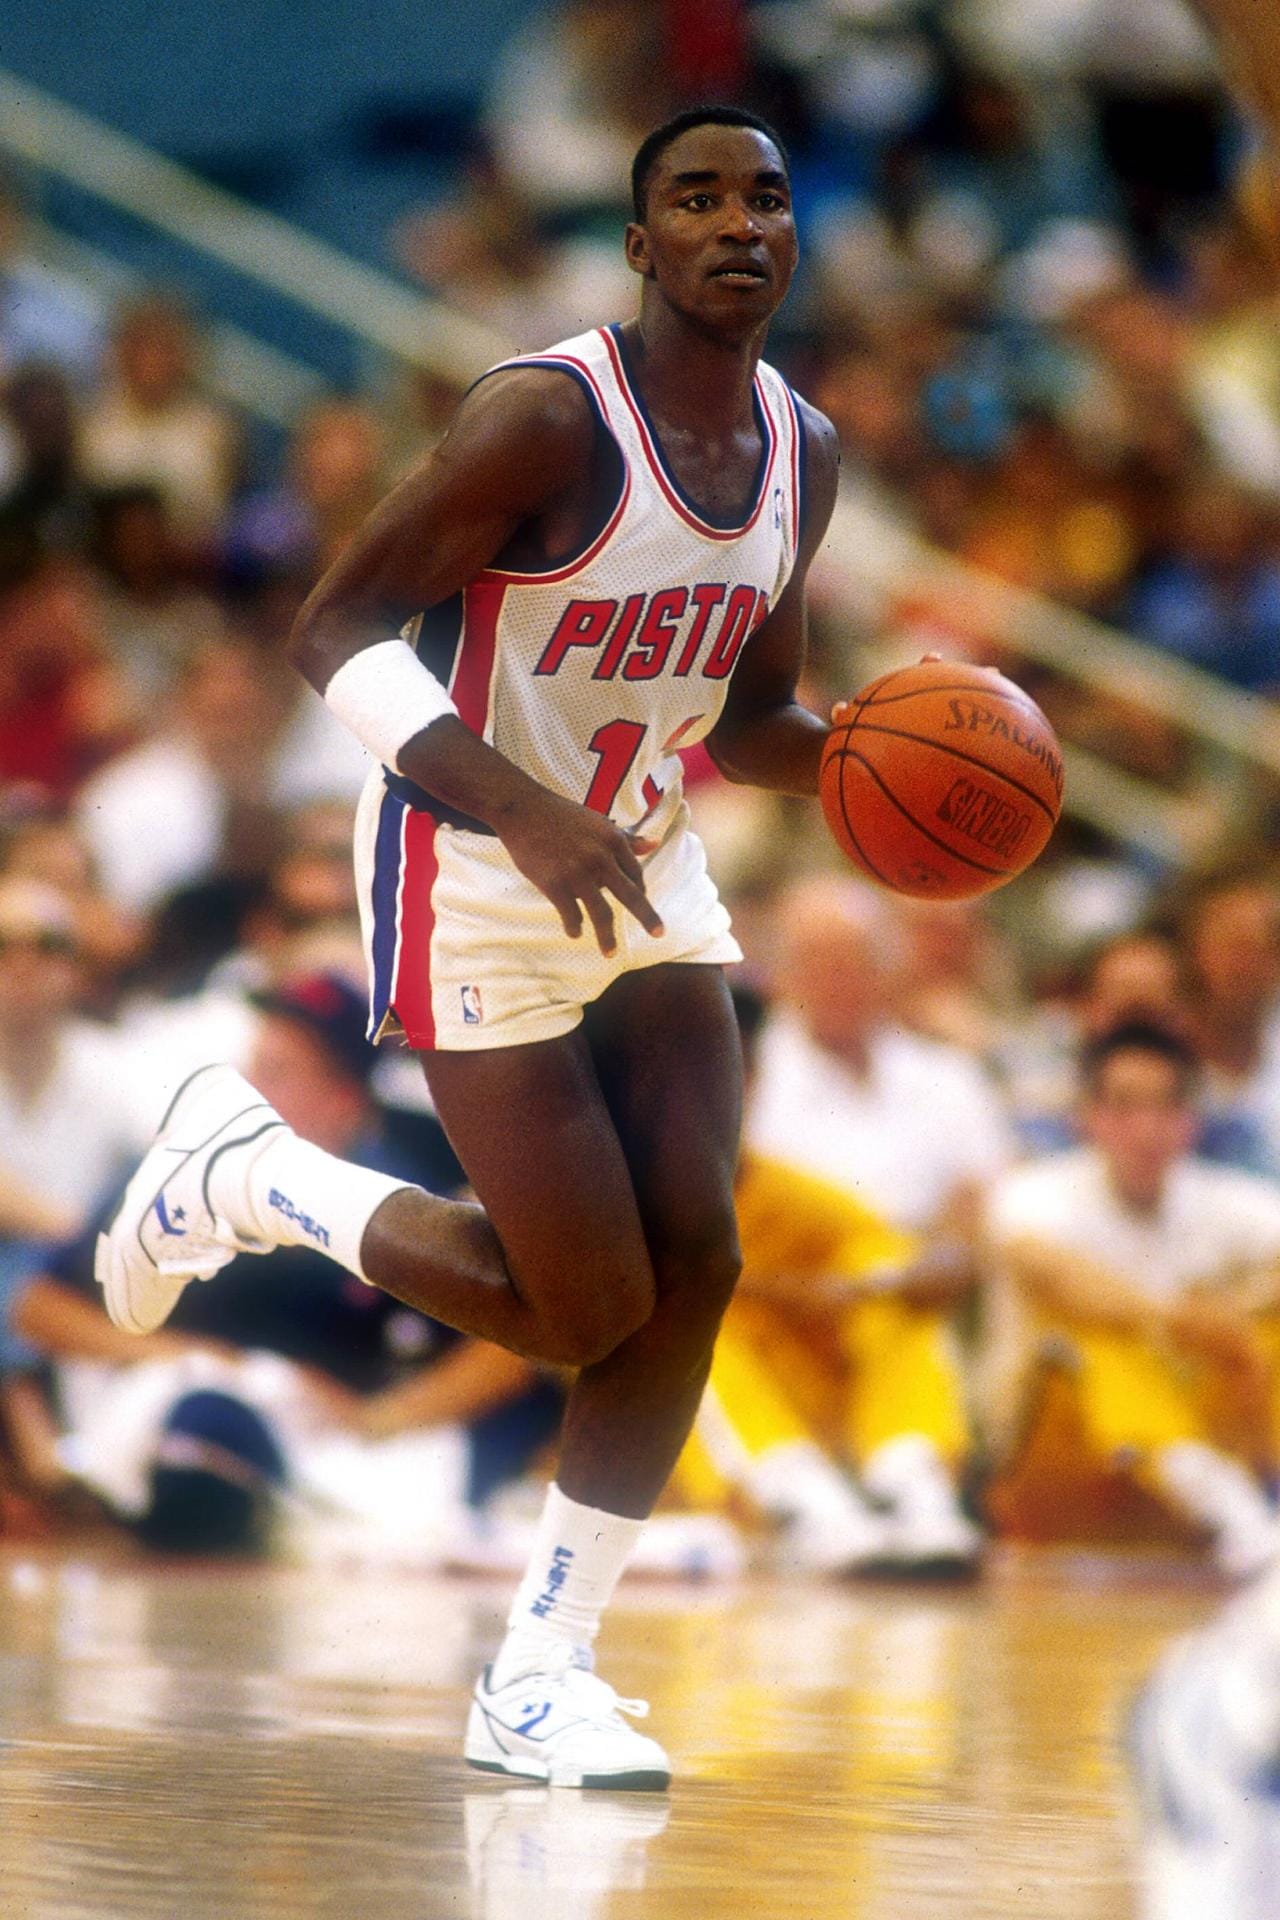 Isiah "Zeke" Thomas (1981-94, 19,2 Punkte und 9,3 Assists im Schnitt) war Point Guard bei den Detroit Pistons. 1989 und '90 führte er die "Bad Boys" zur Meisterschaft. Thomas hatte eine starke Rivalität mit Michael Jordan. Beim All-Star-Game '85 soll er seine Mitspieler überredet haben, dem Neuling den Ball nicht zu geben. Jordan soll '92 im Gegenzug dafür gesorgt haben, dass Thomas nicht Teil des Dreamteams war. Nach einem Achillessehnen-Riss beendete er seine Karriere.